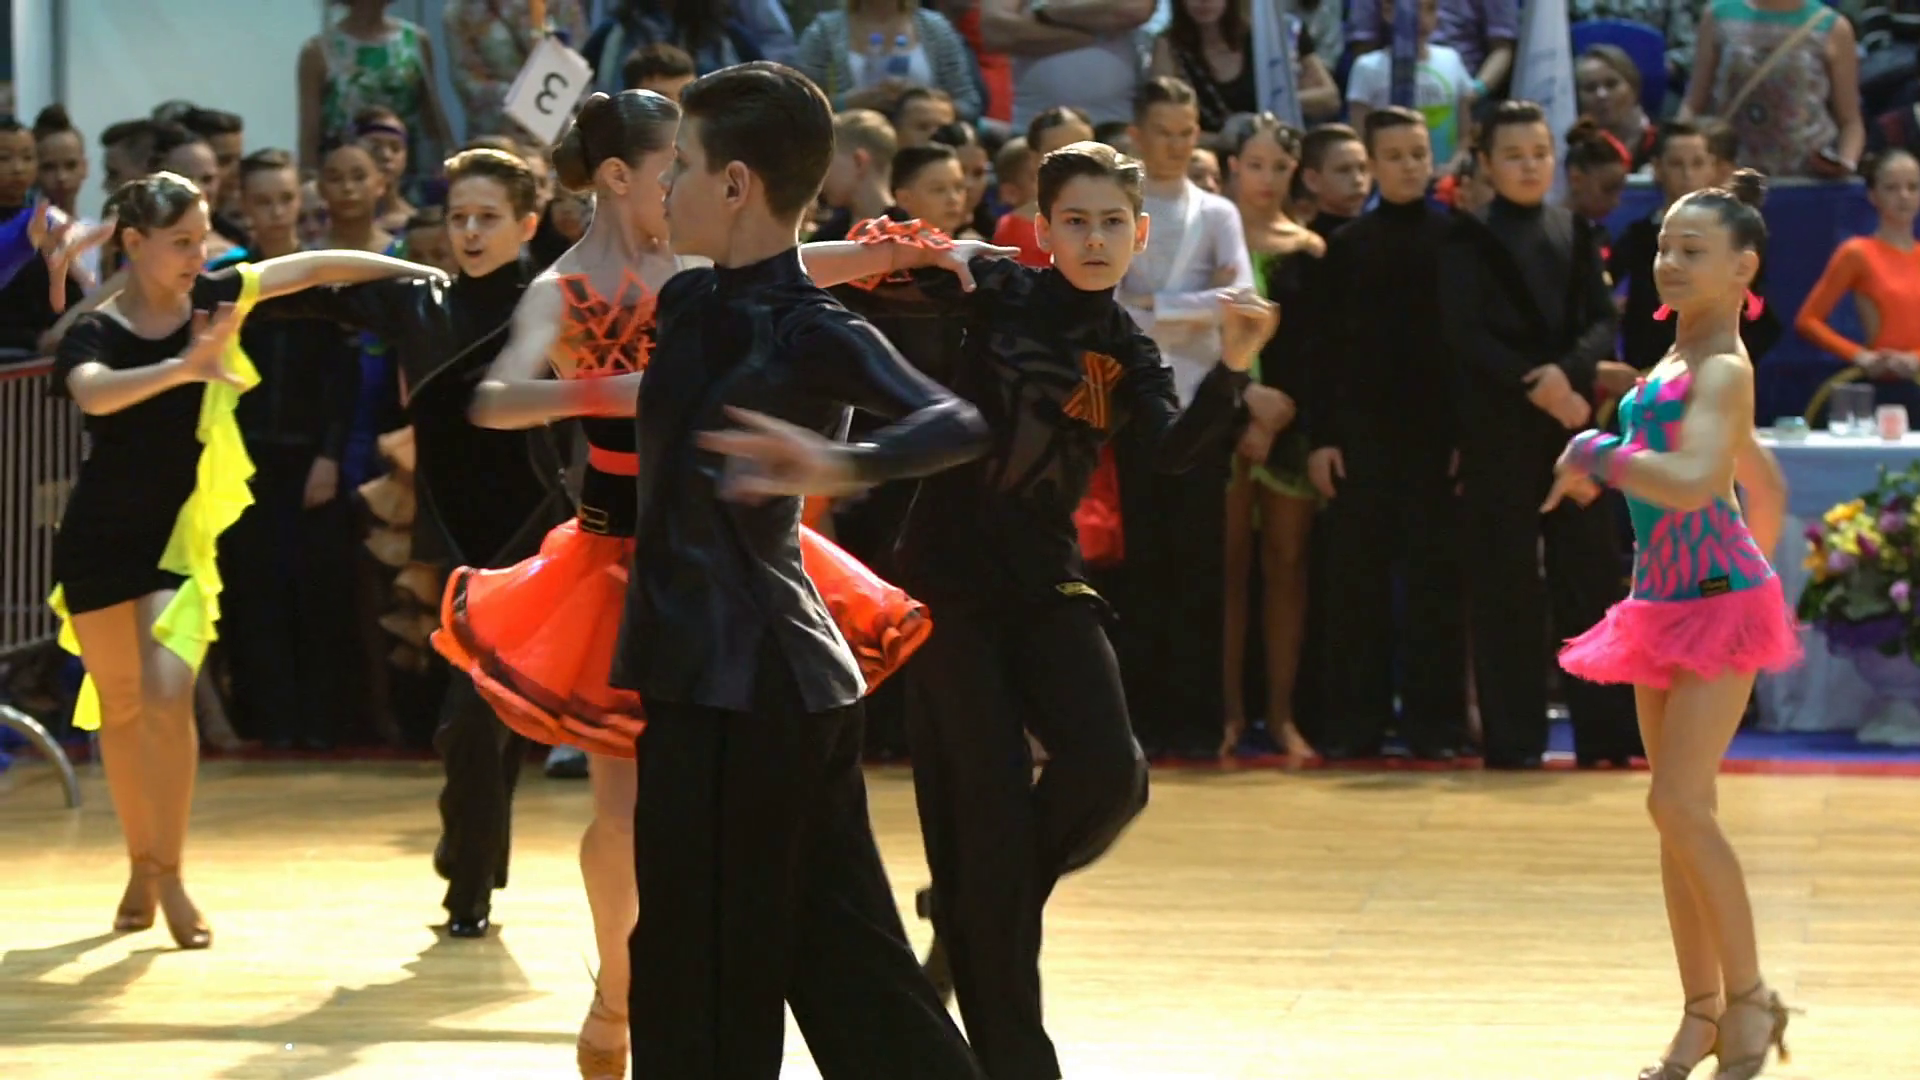 Dancing salsa teen video